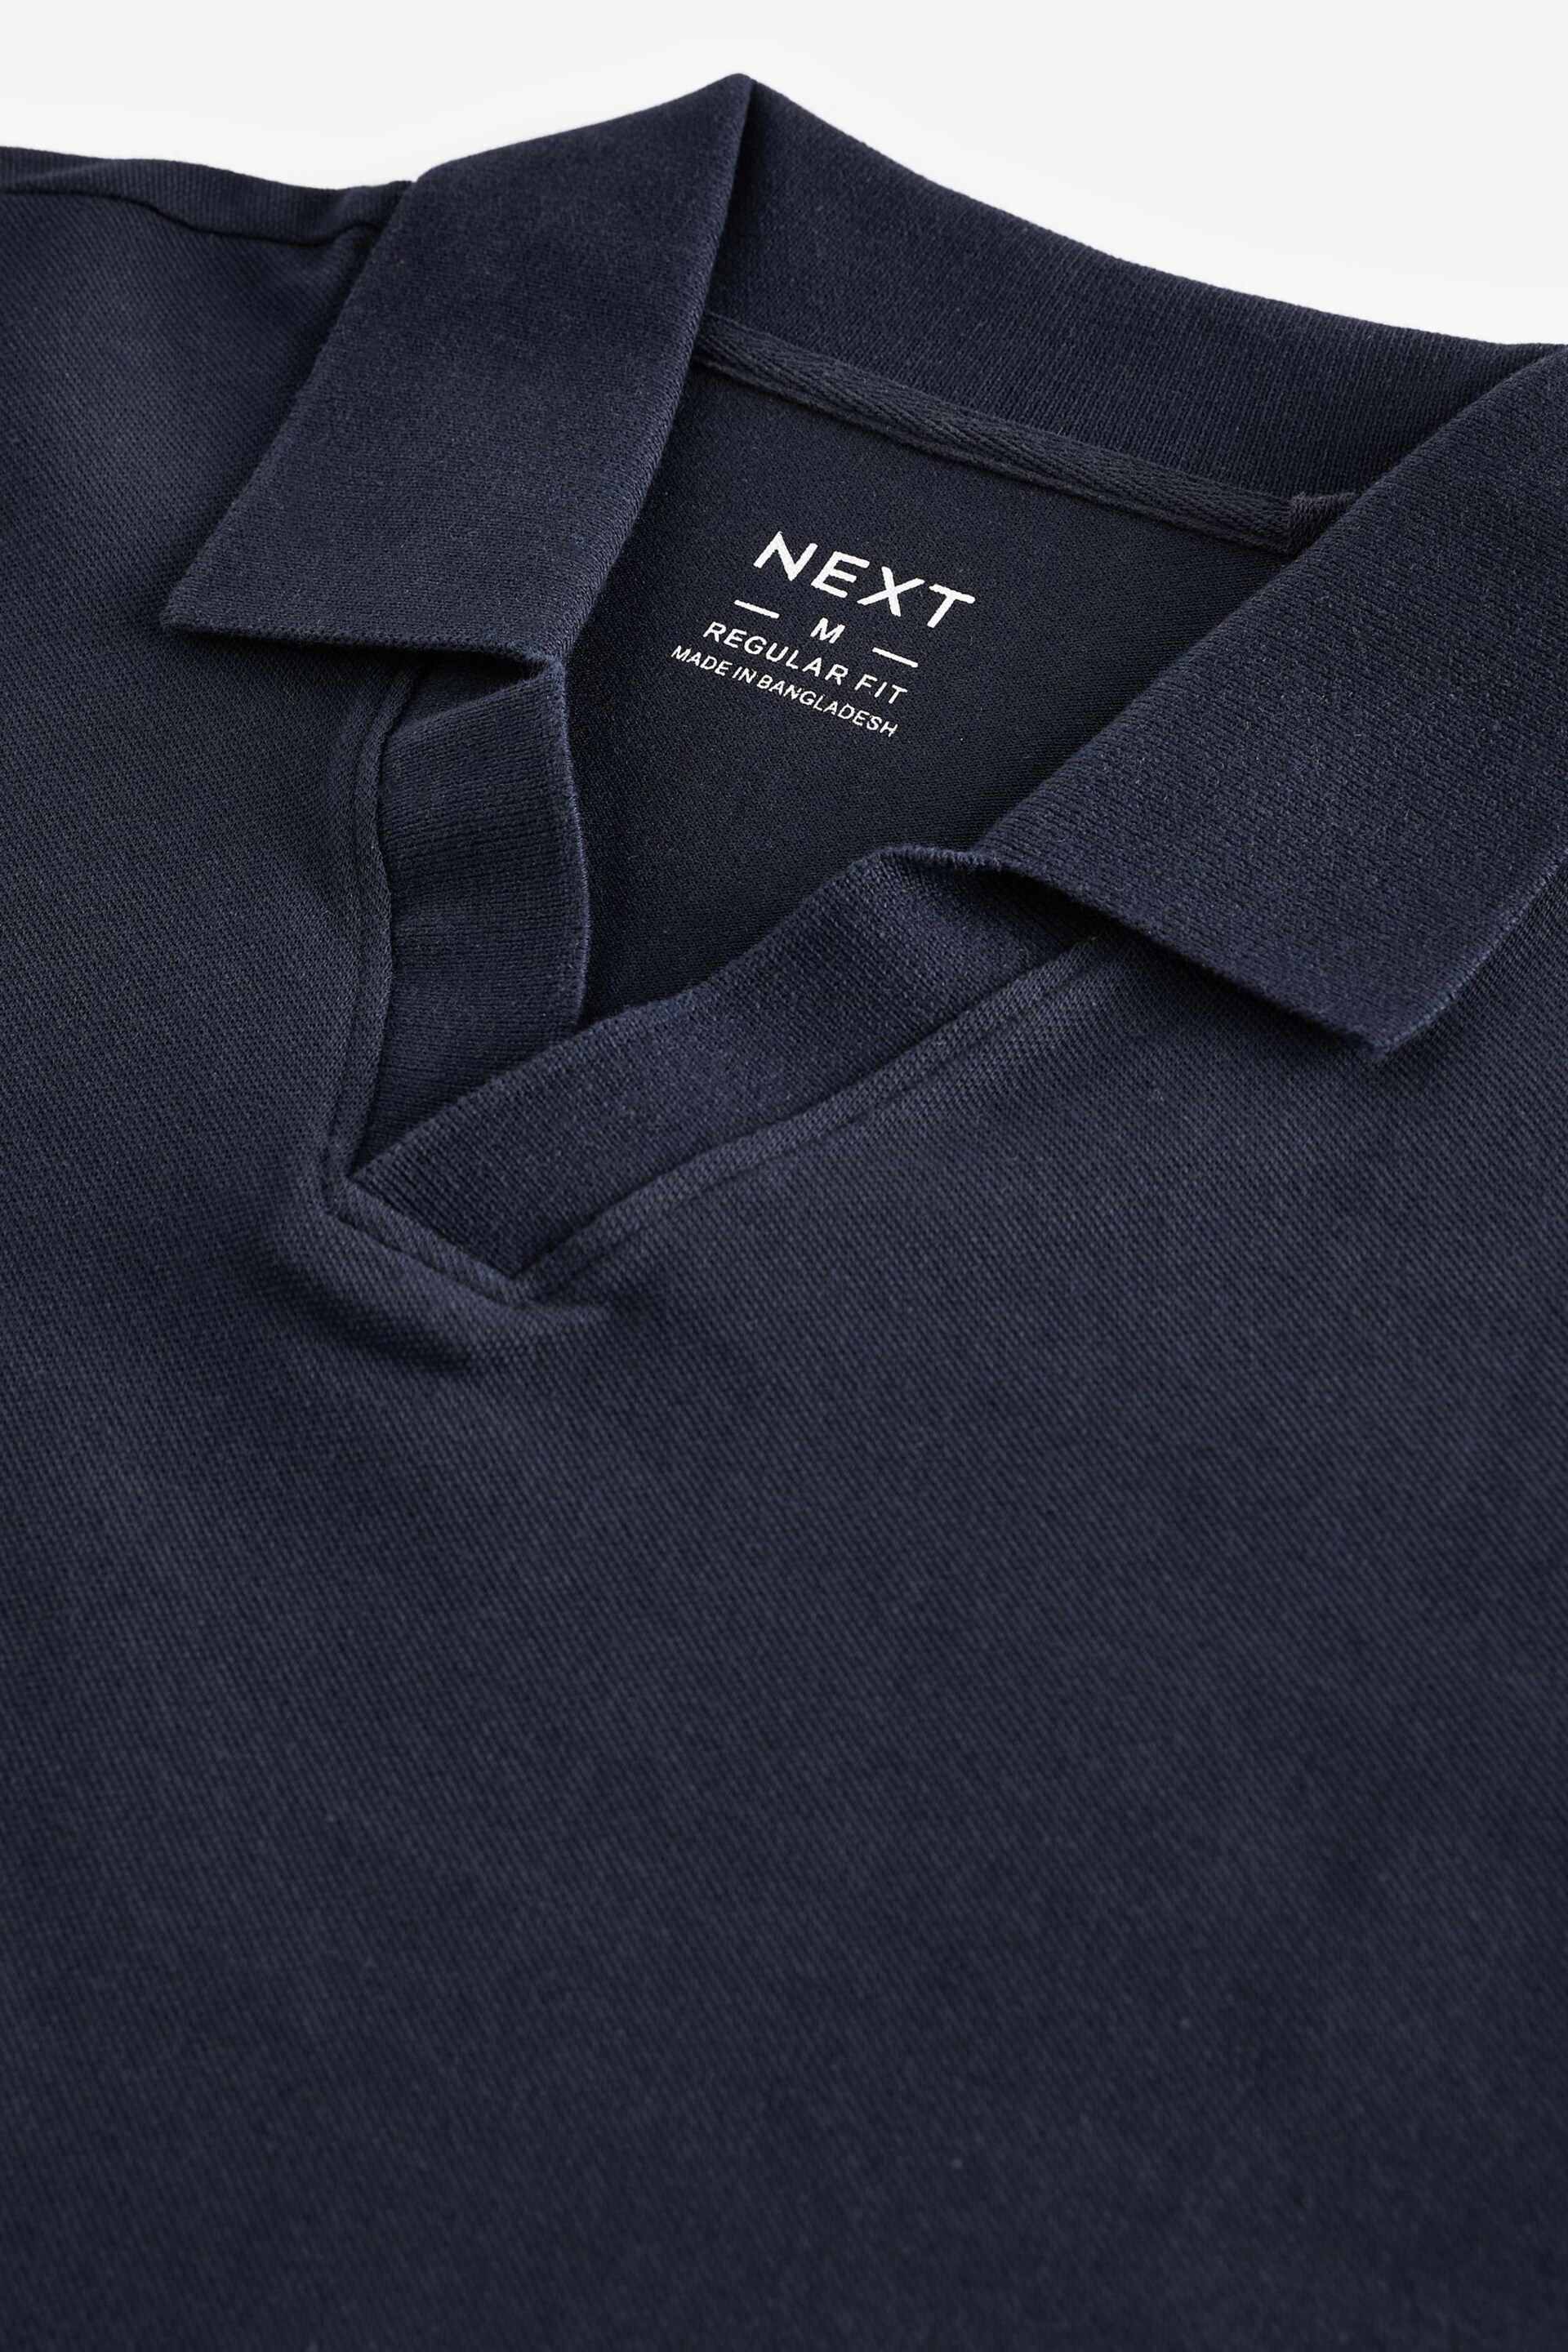 Navy Short Sleeve Cuban Collar Pique Polo Shirt - Image 6 of 7